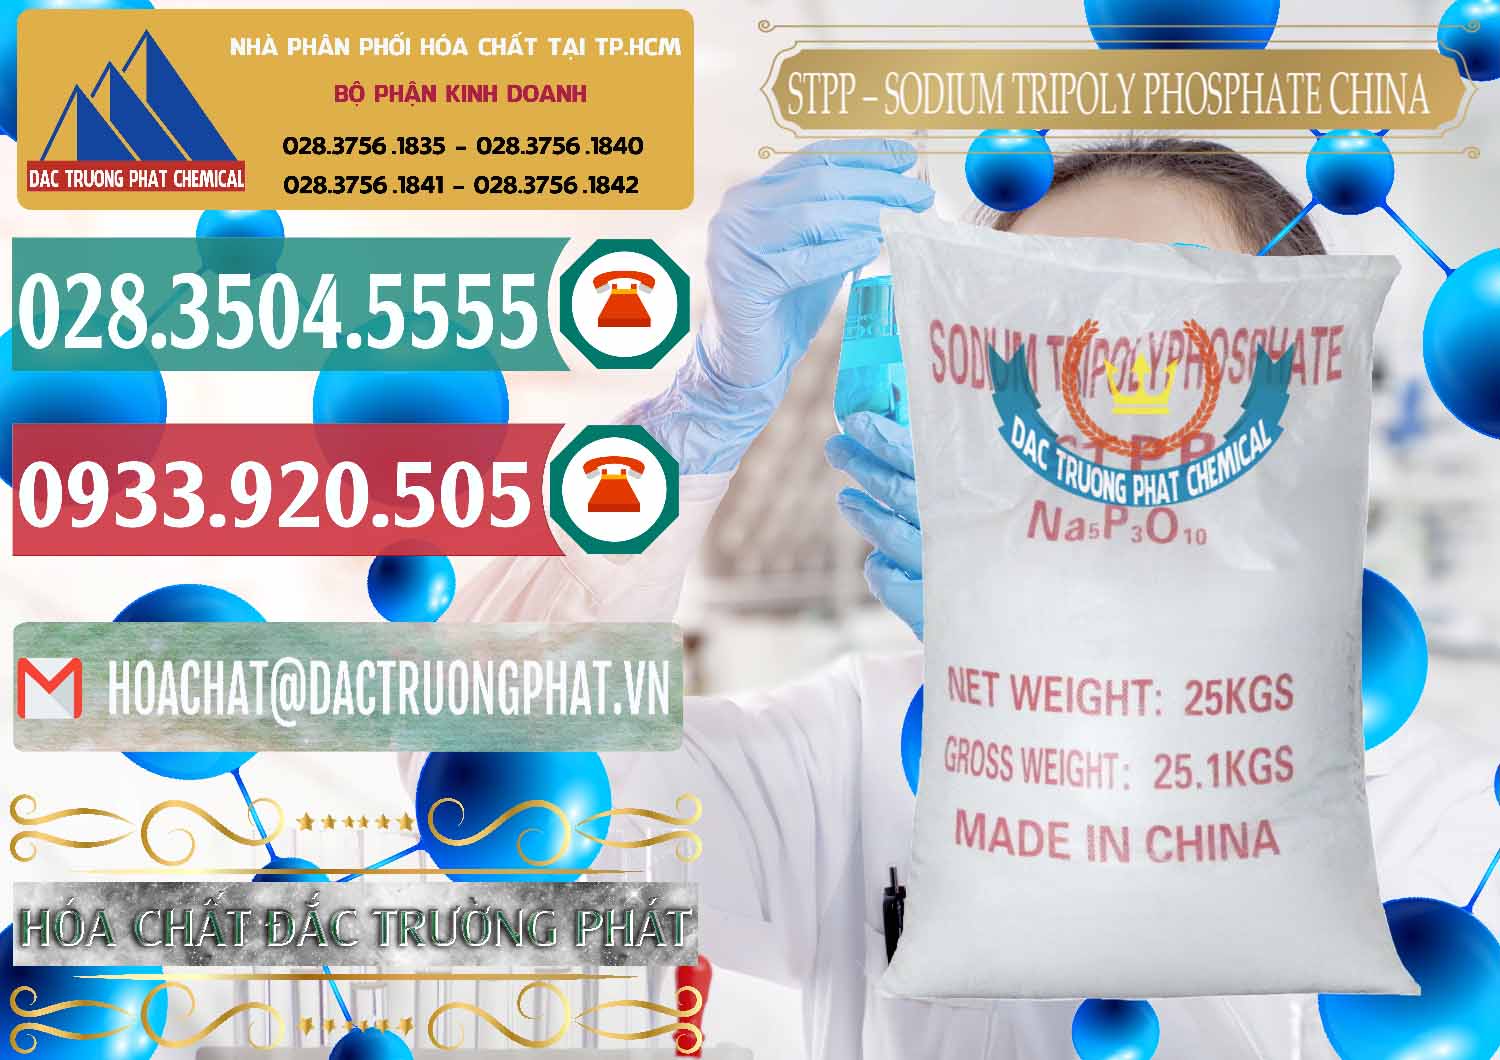 Nhà nhập khẩu & bán Sodium Tripoly Phosphate - STPP 96% Chữ Đỏ Trung Quốc China - 0155 - Cty chuyên nhập khẩu ( phân phối ) hóa chất tại TP.HCM - muabanhoachat.vn